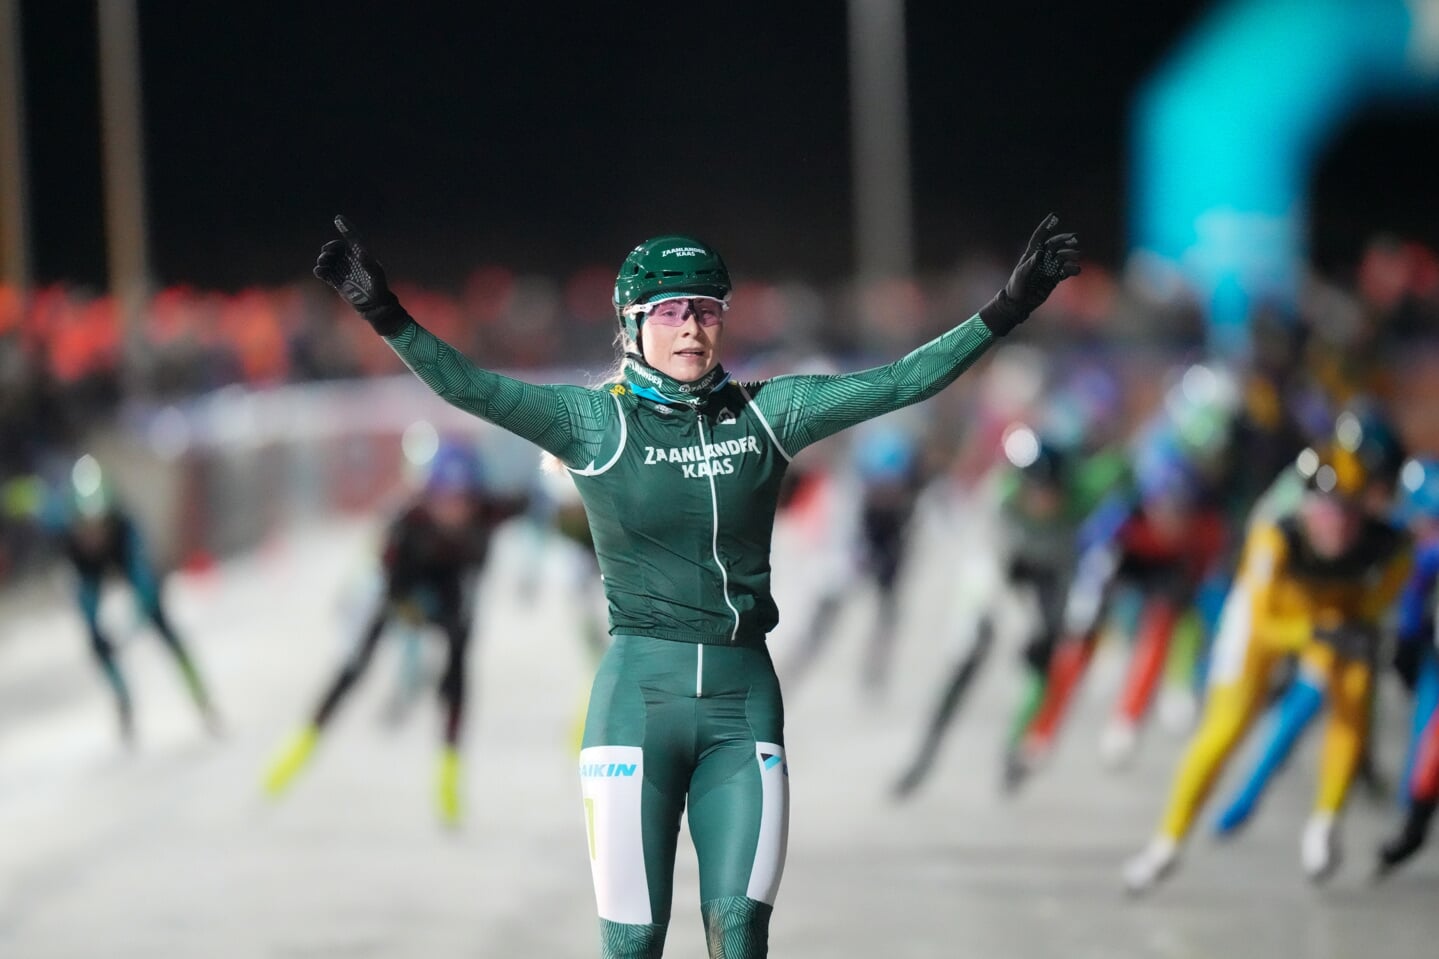 Marijke Groenewoud twijfelde even of ze moest starten, maar wint wel in Winterswijk en een dag later in Noordlaren. (Foto Timsimaging / Neeke Smit)